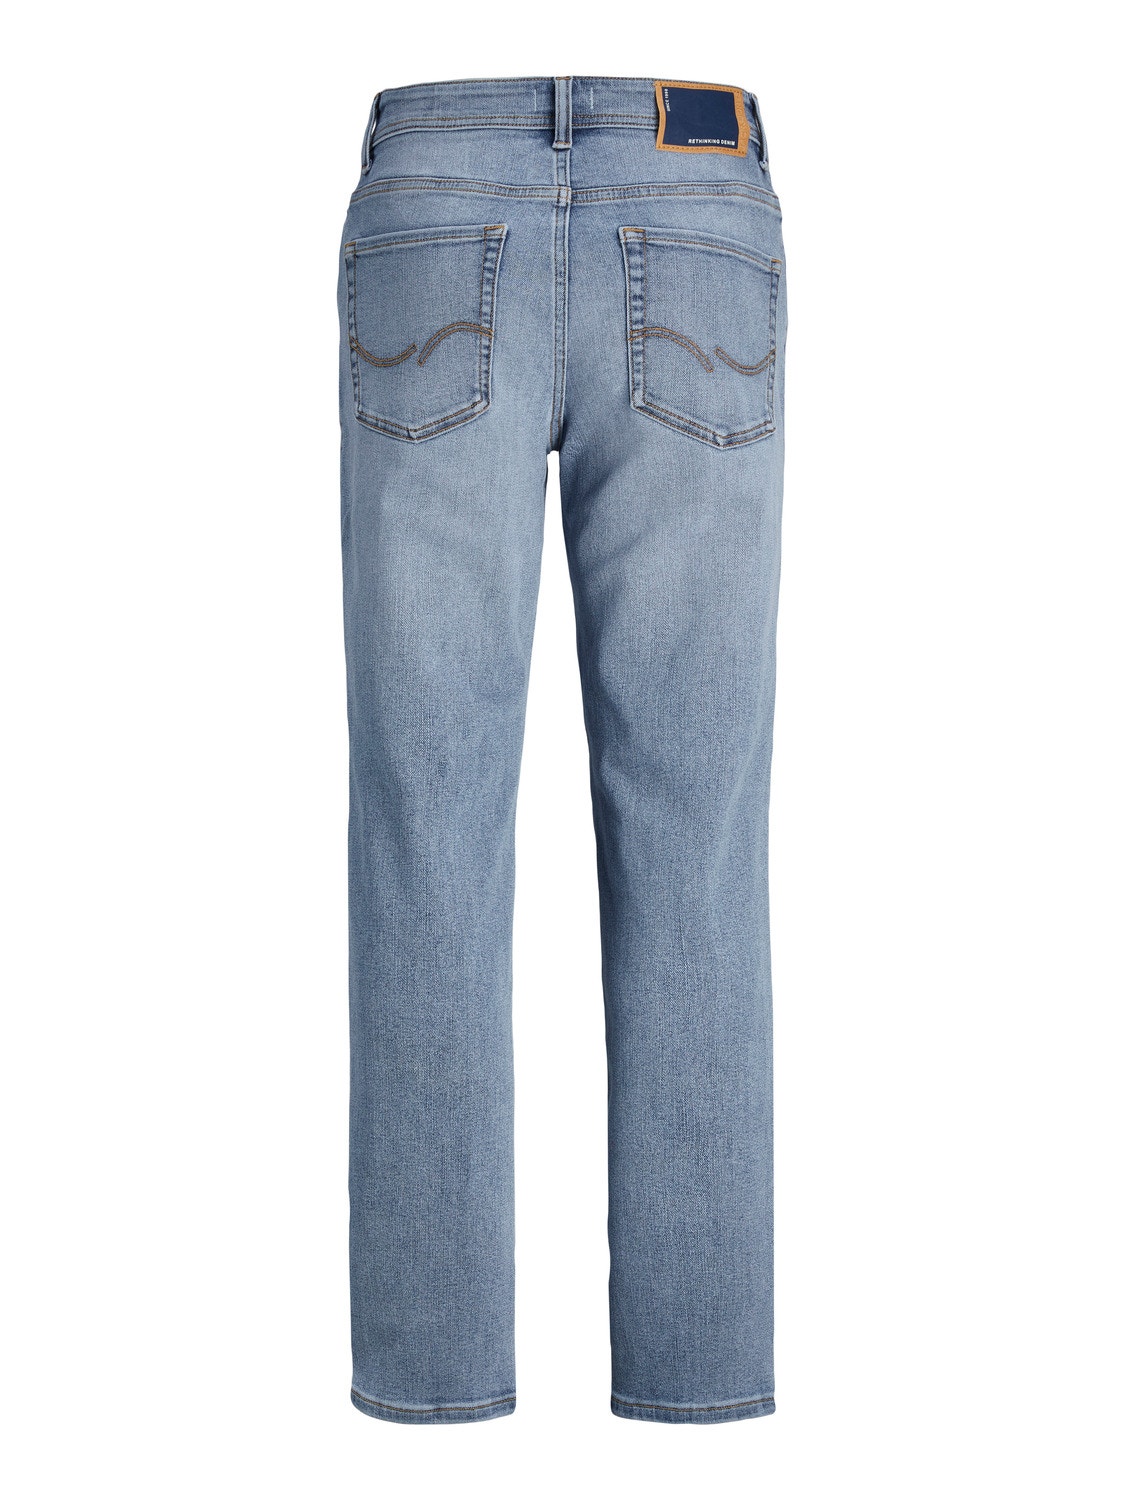 Jack & Jones JJICLARK JJIORIGINAL SQ 585 Regular fit Jeans Für jungs -Blue Denim - 12247863